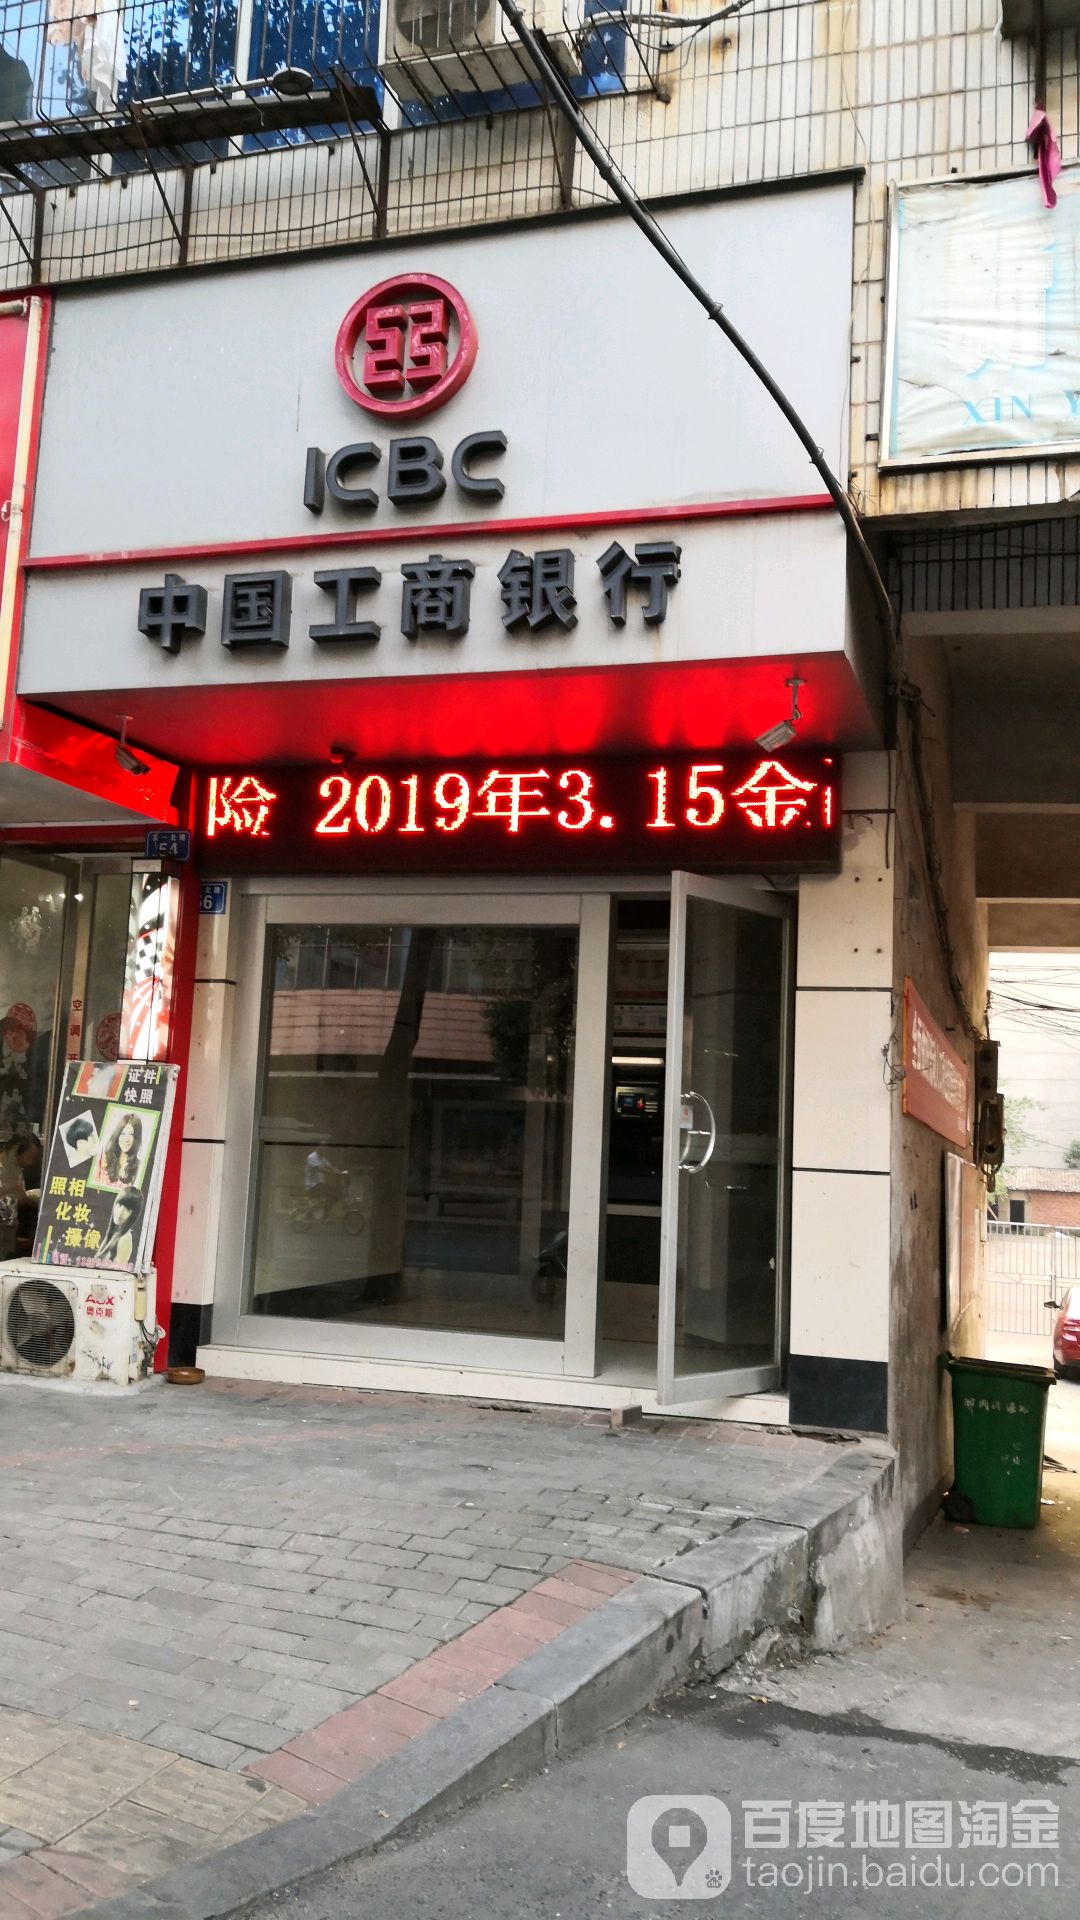 中國工商銀行24小時自助銀行服務(五一北路店)